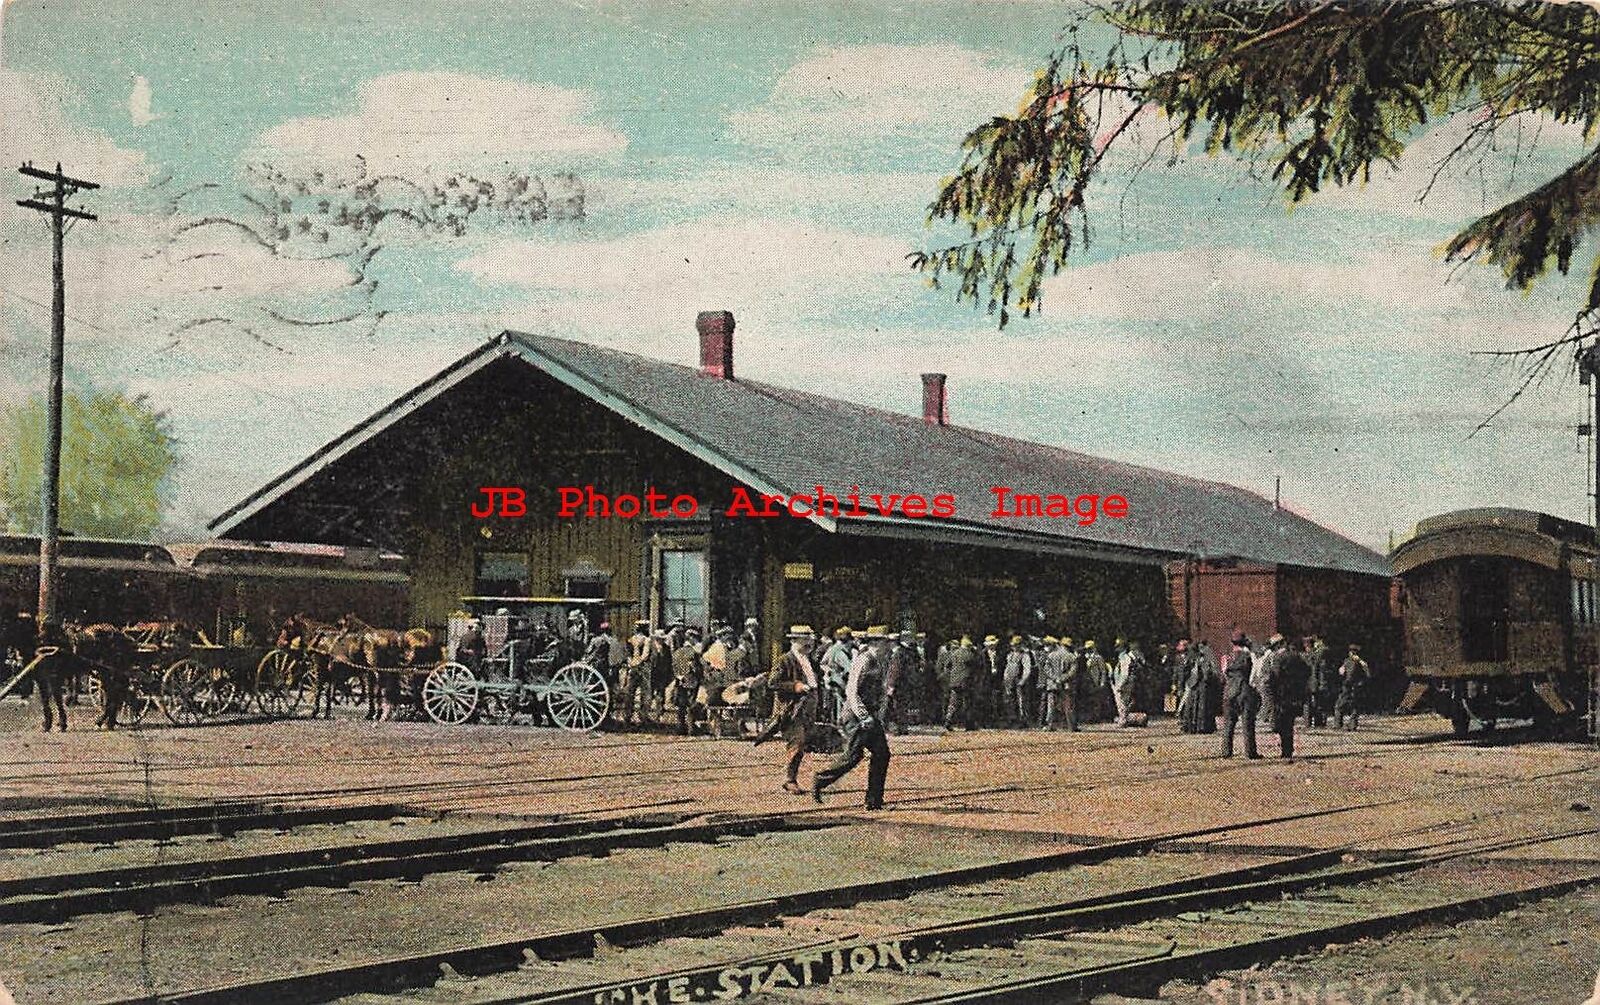 NY, Stoney New York, Railroad Station, Exterior View, 1912 PM